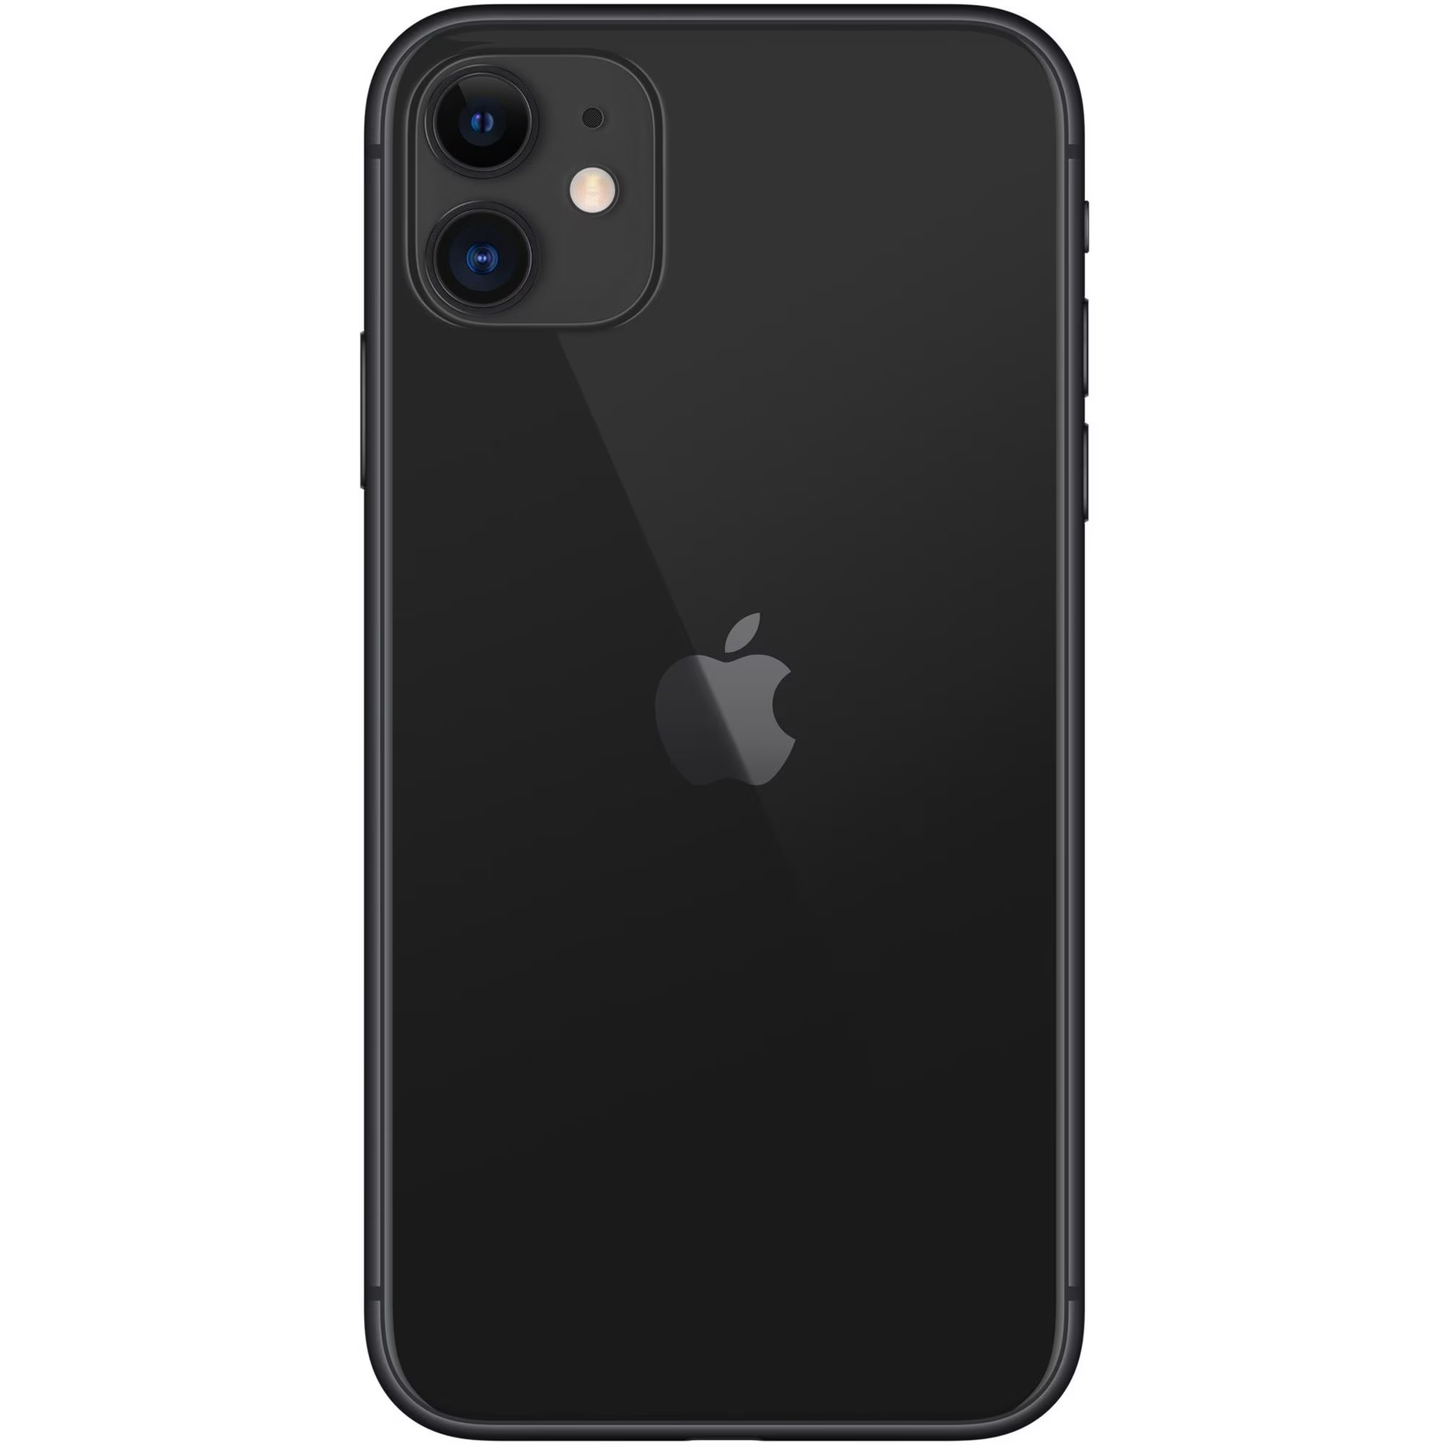 iPhone 11 (64gb) - BLACK